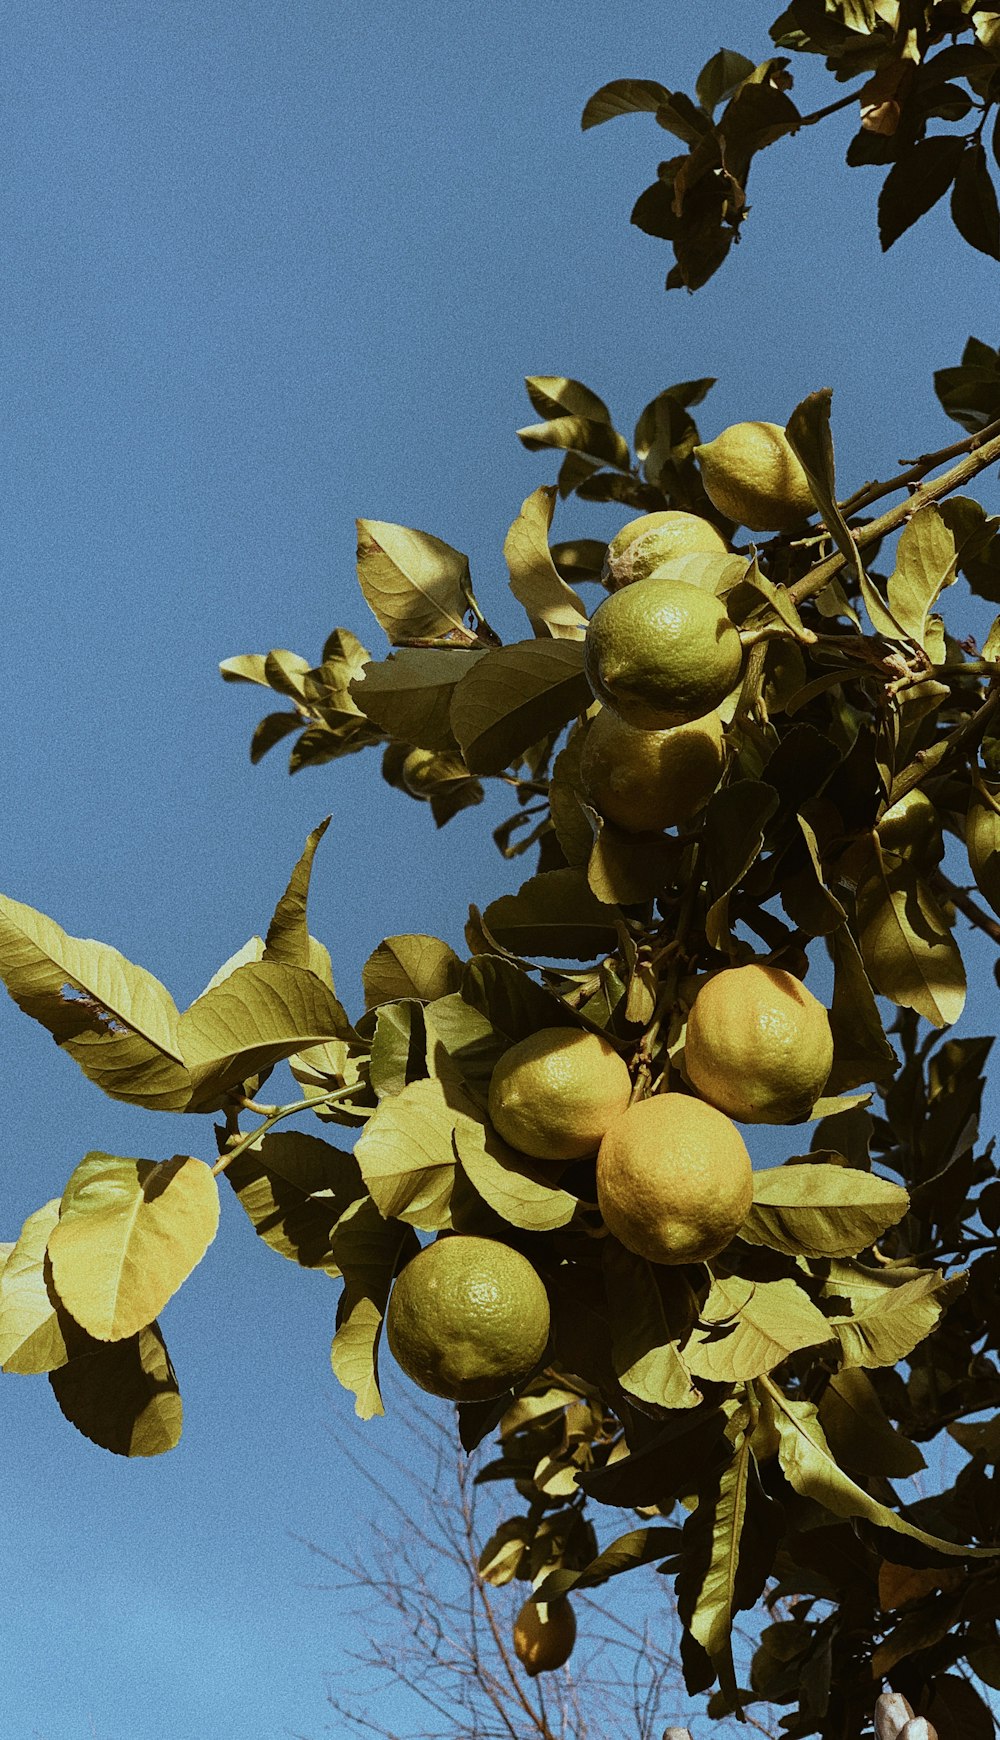 yellow lemon fruit on tree during daytime